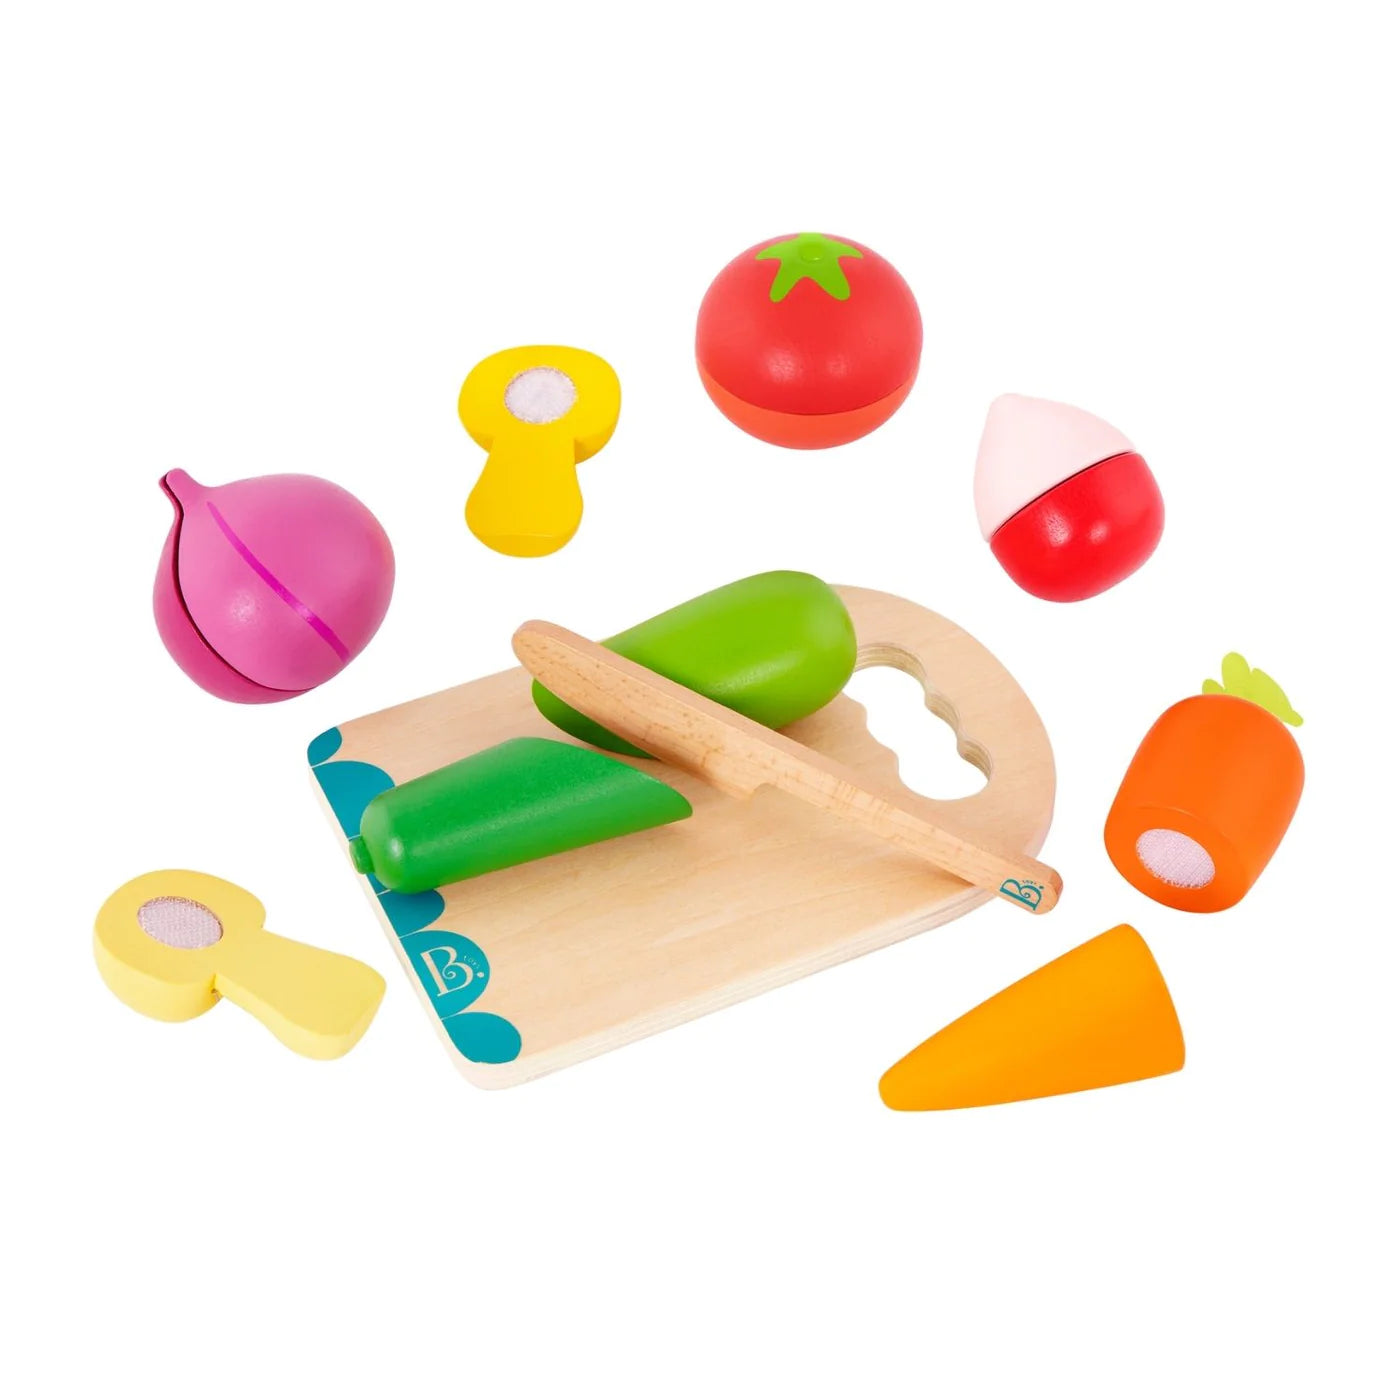 Chop ‘n’ Play - Vegetables Wooden Play Set